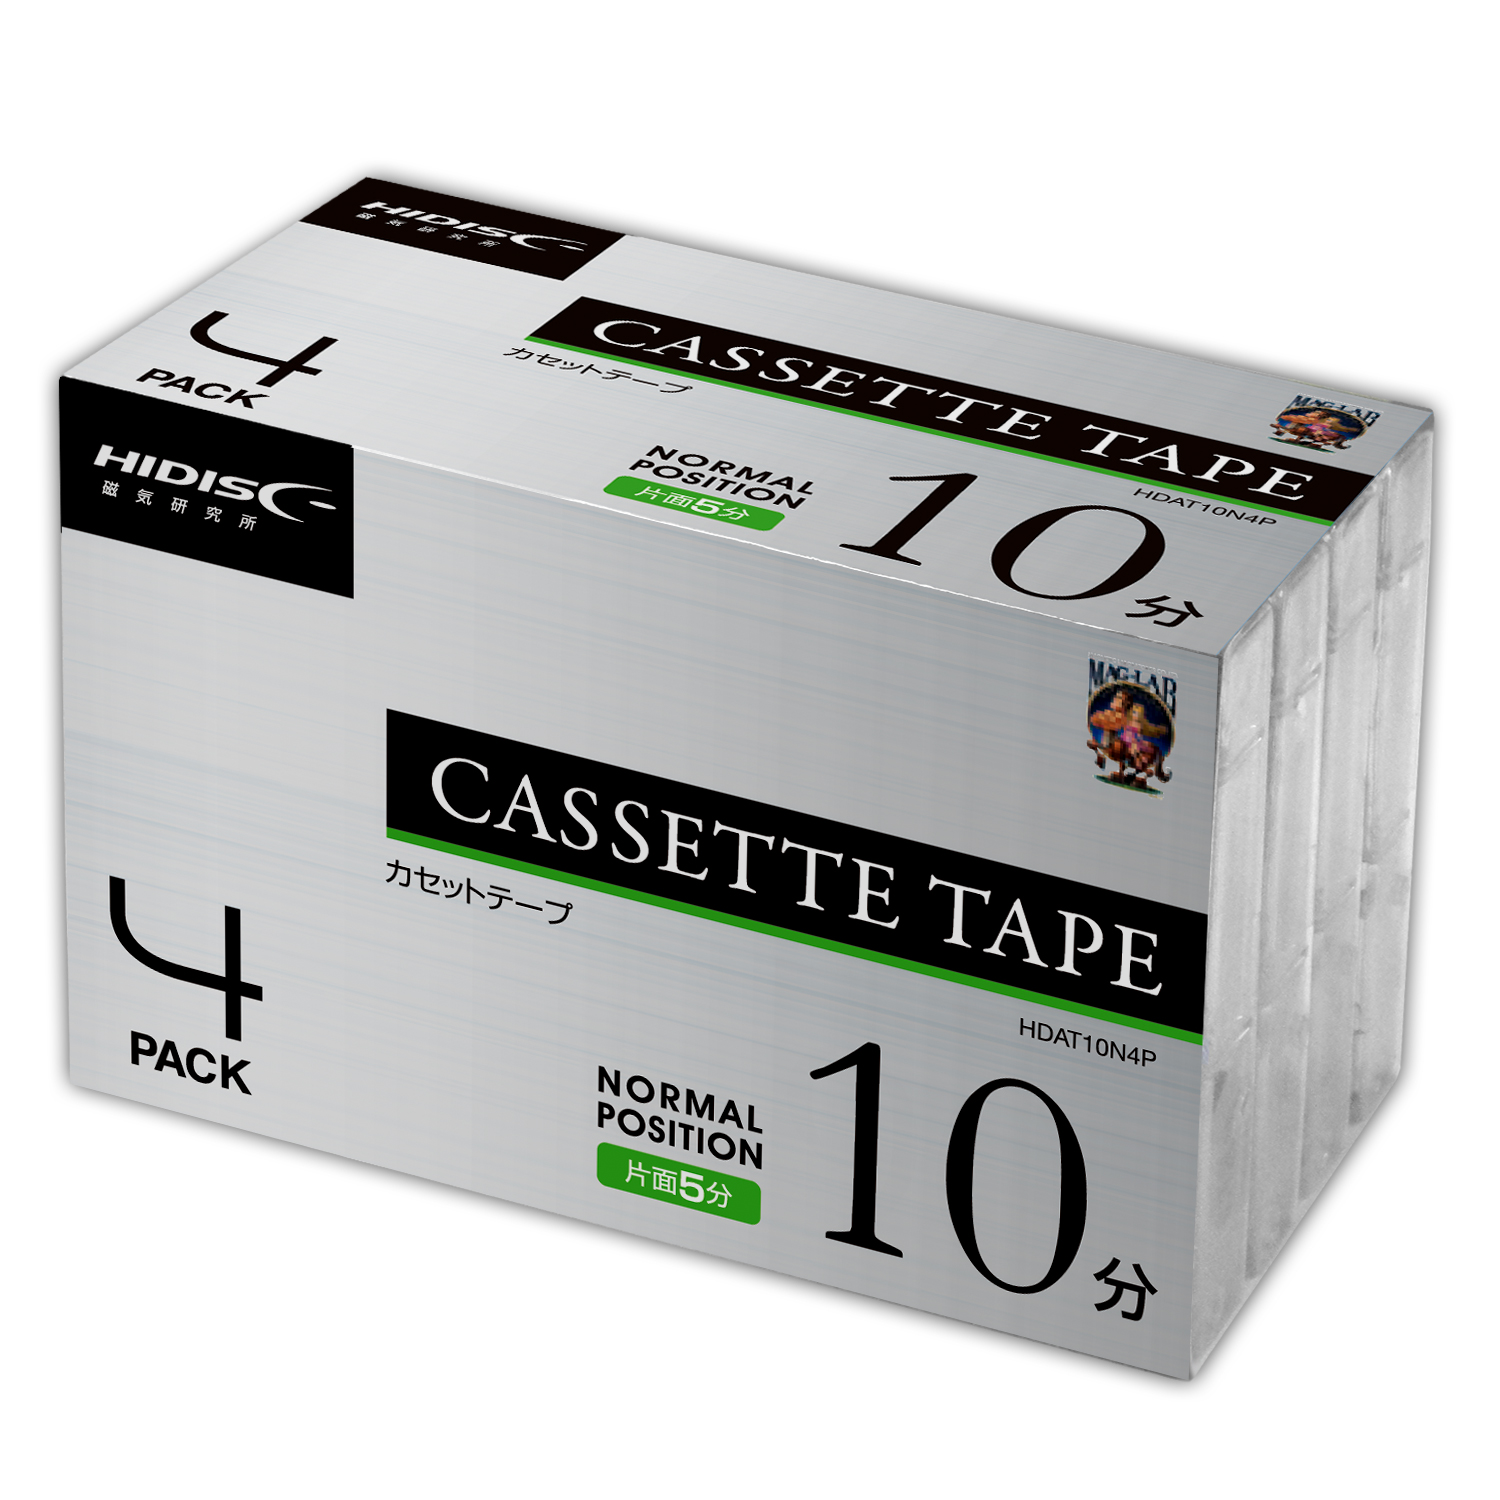 カセットテープ ノーマルポジション 10分 4巻